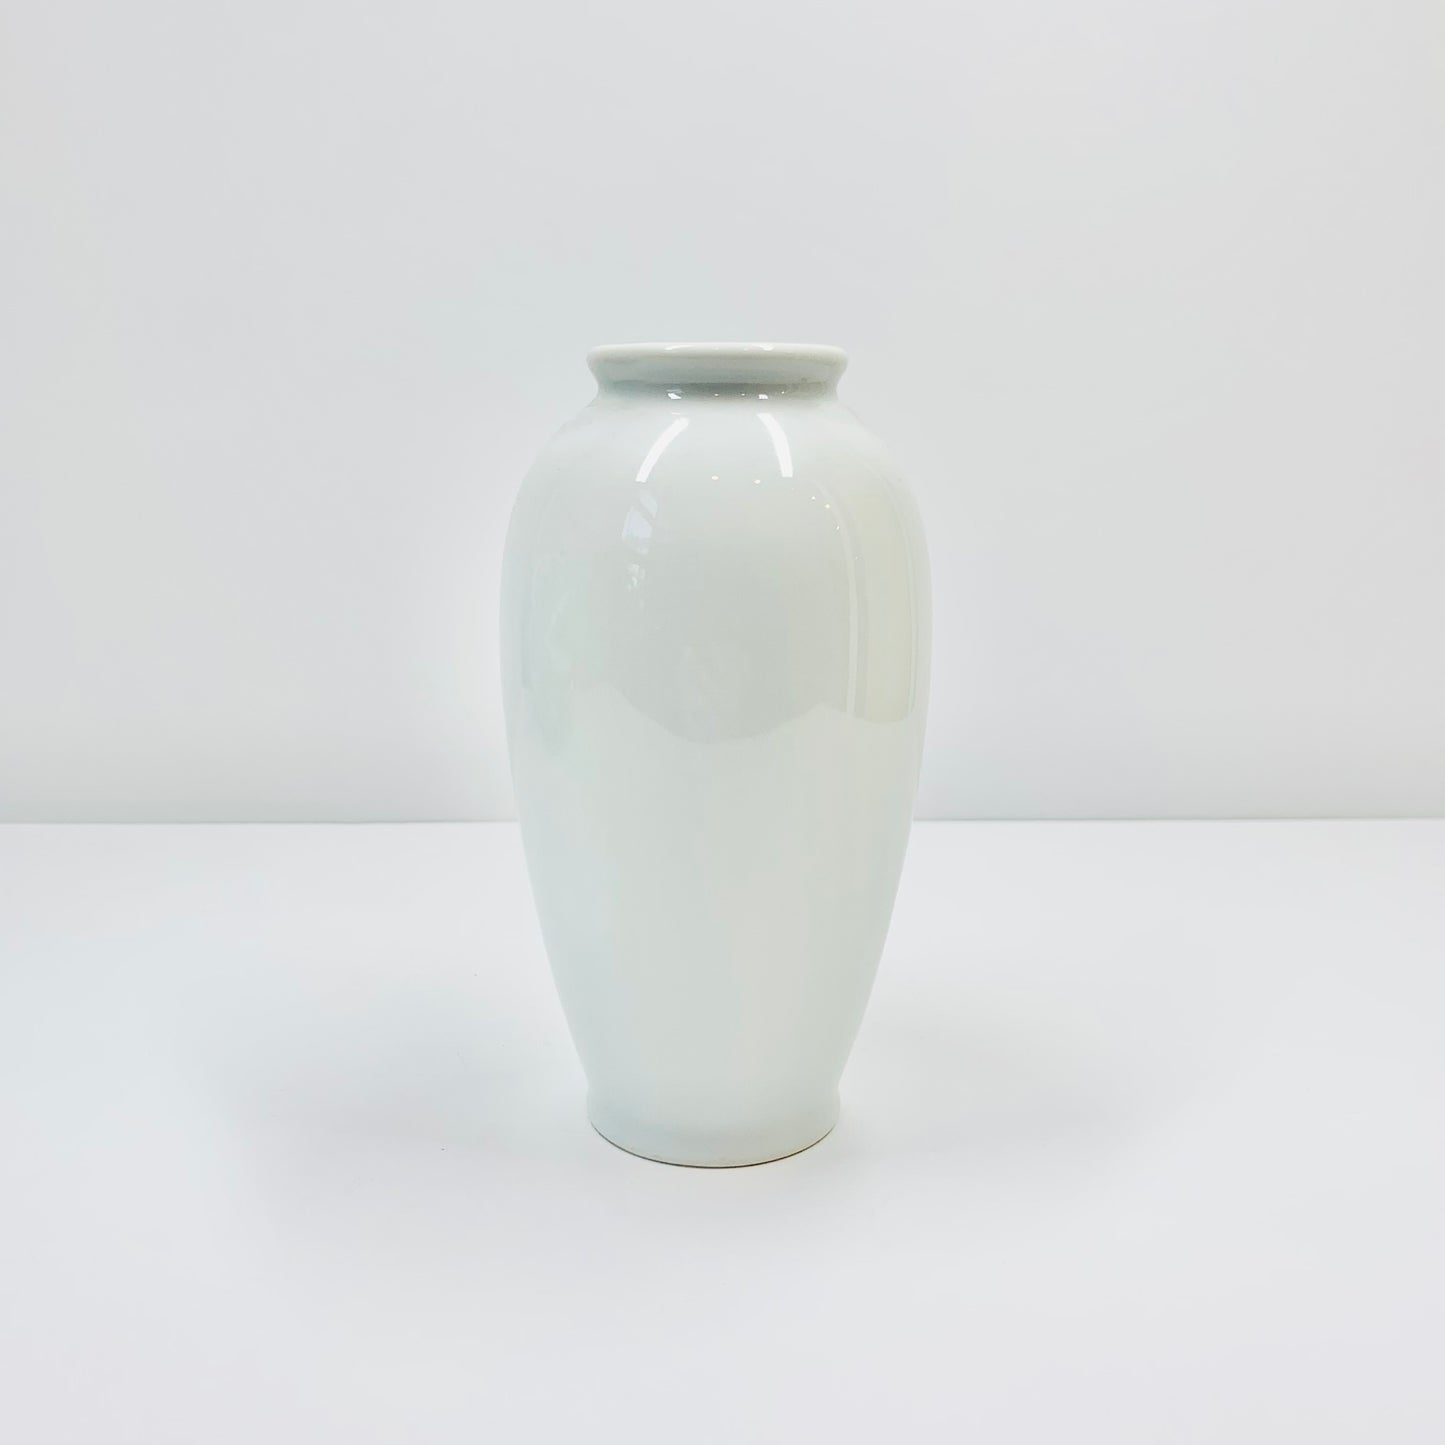 Vintage Japanese porcelain vase